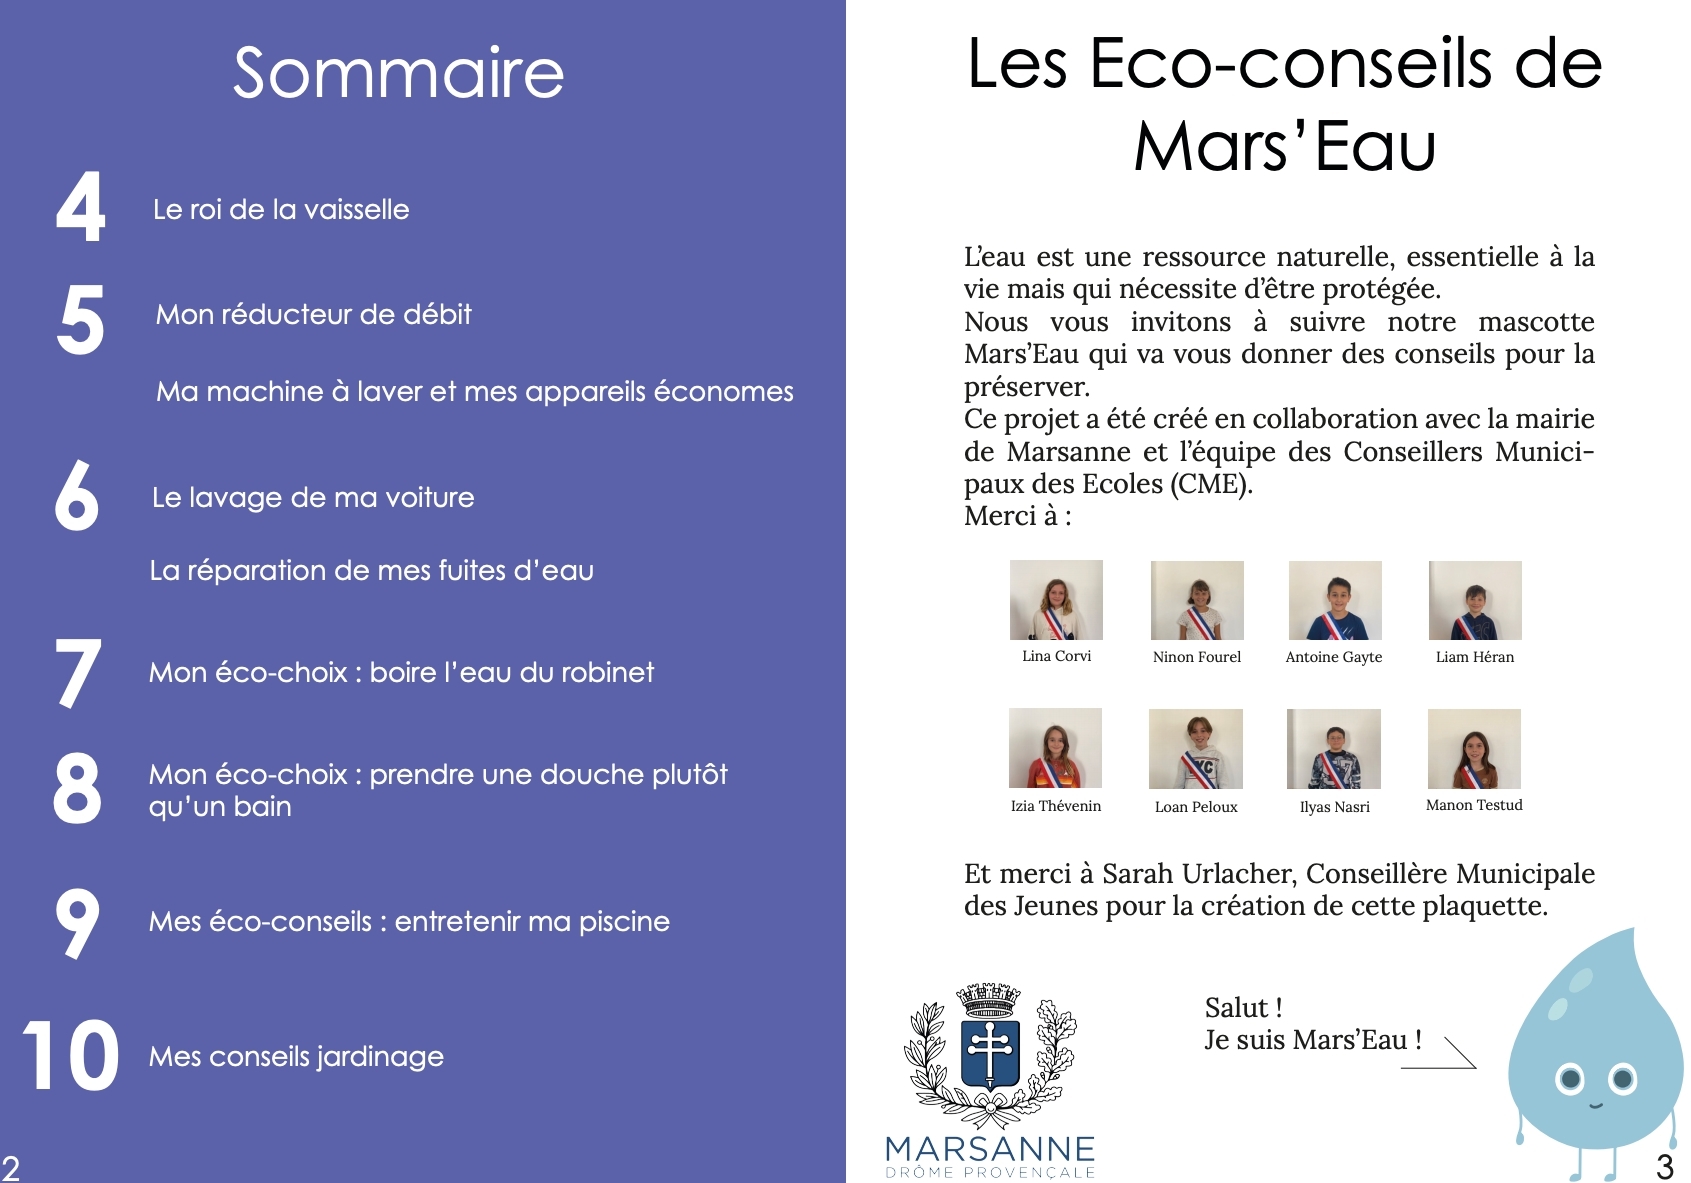 Marsanne eco conseils eau Marseau.png page 2 3